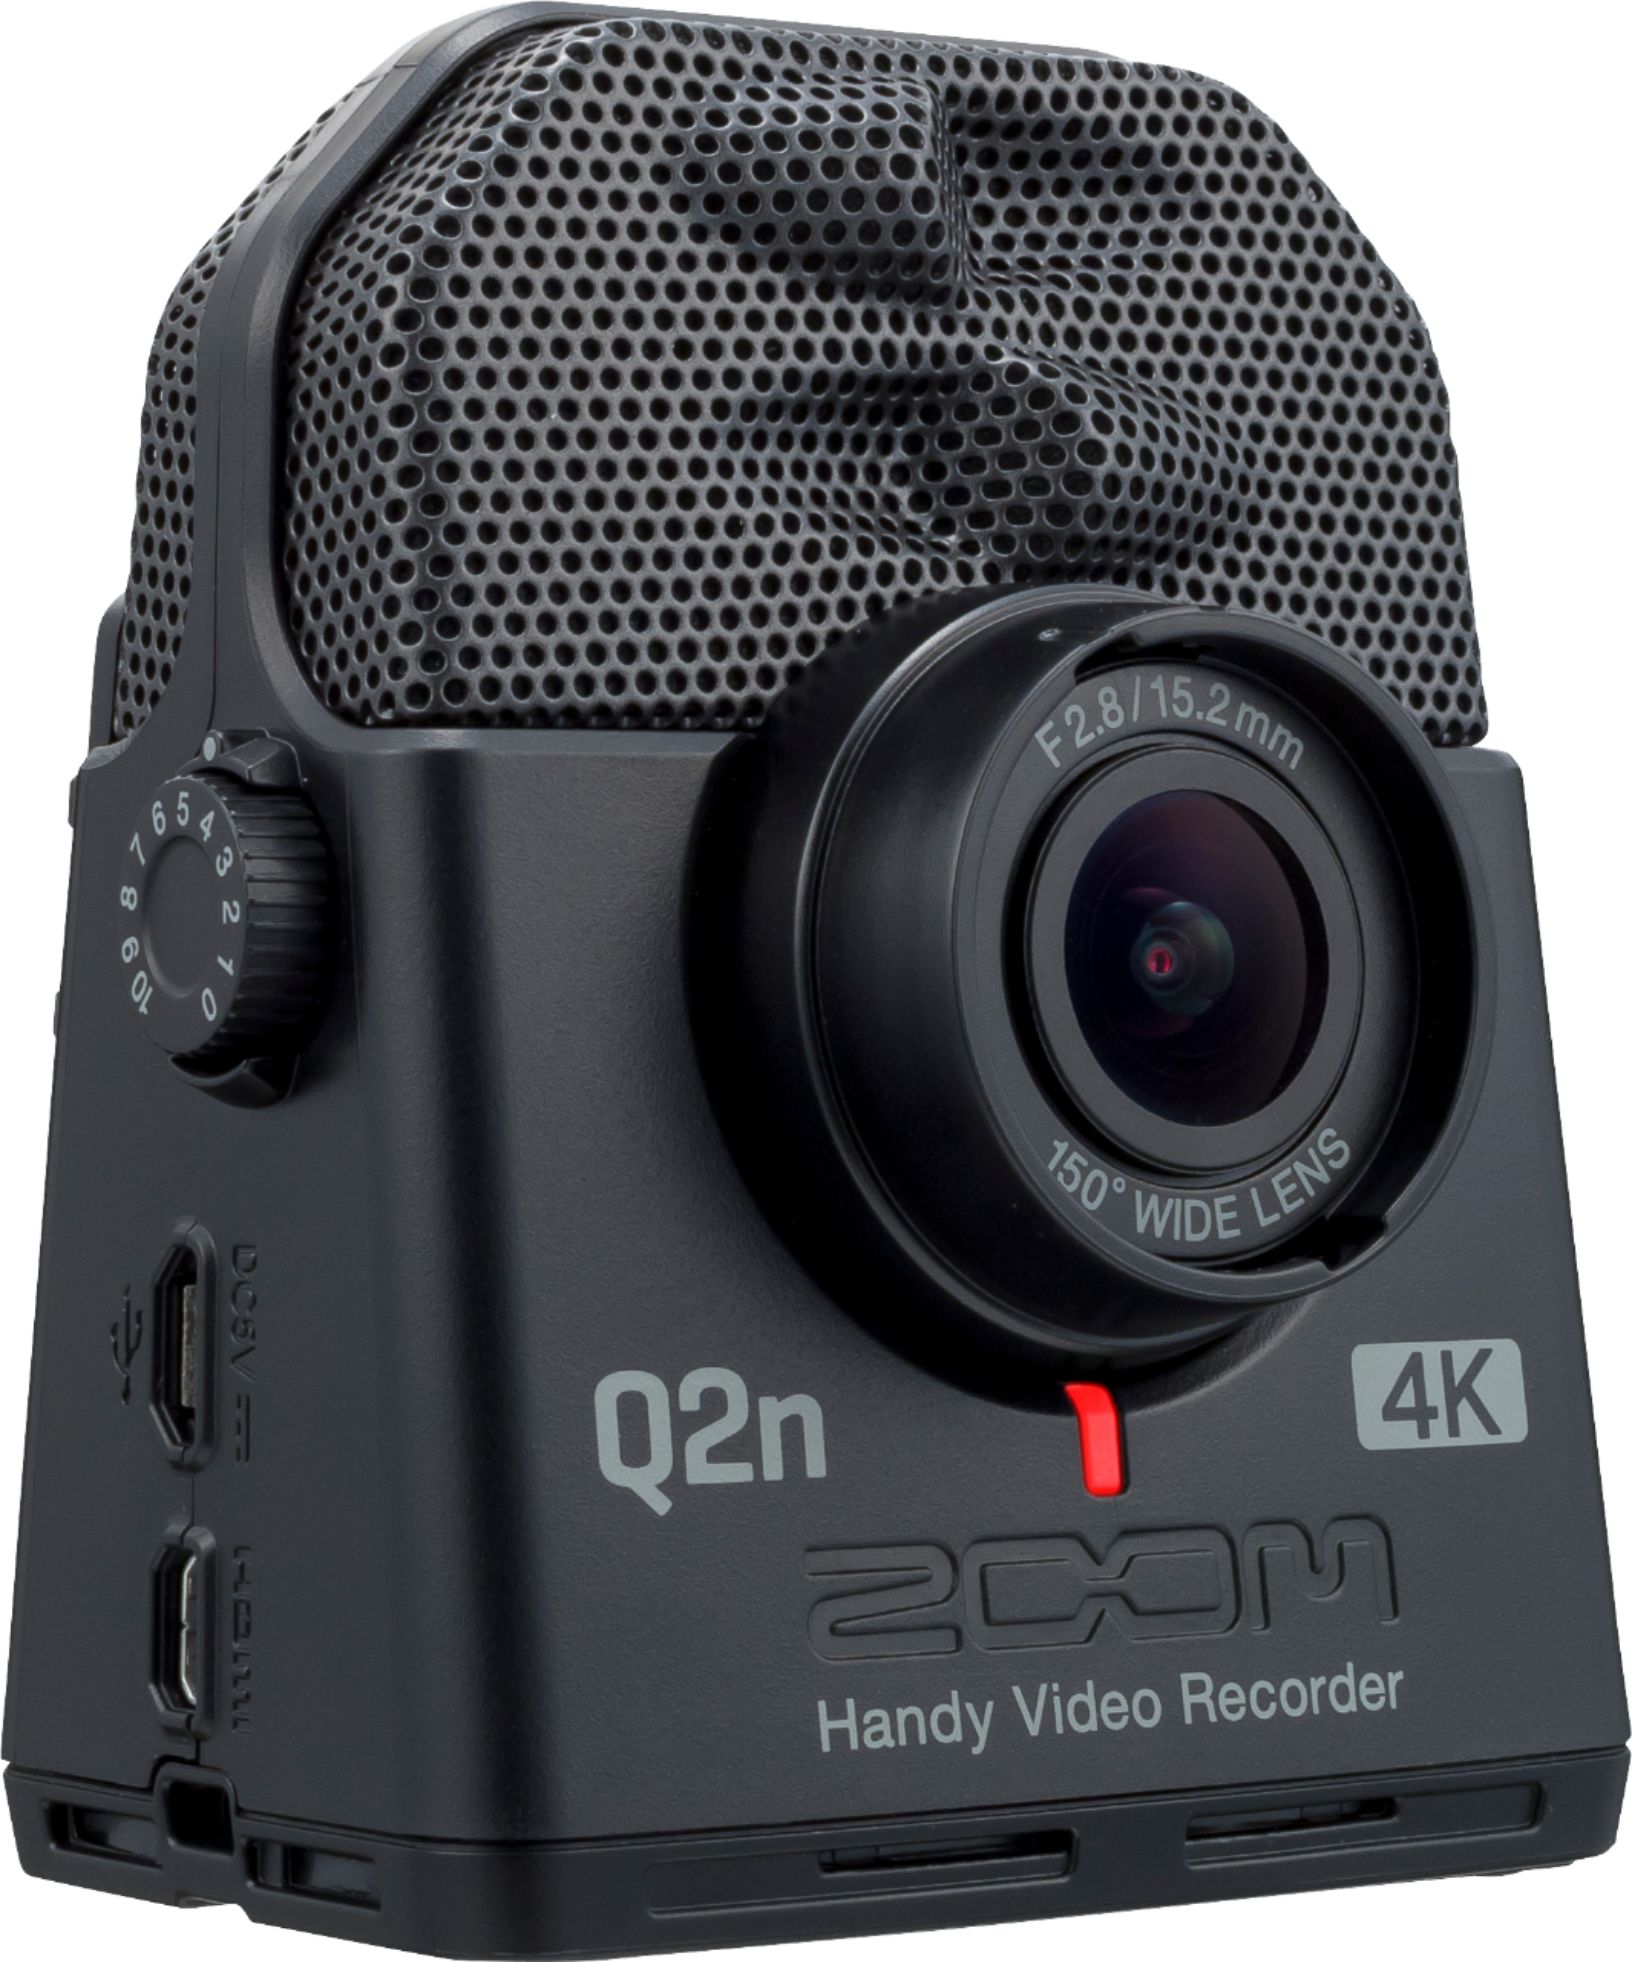 Zoom HD Action Camera Black Q2N-4K - Best Buy